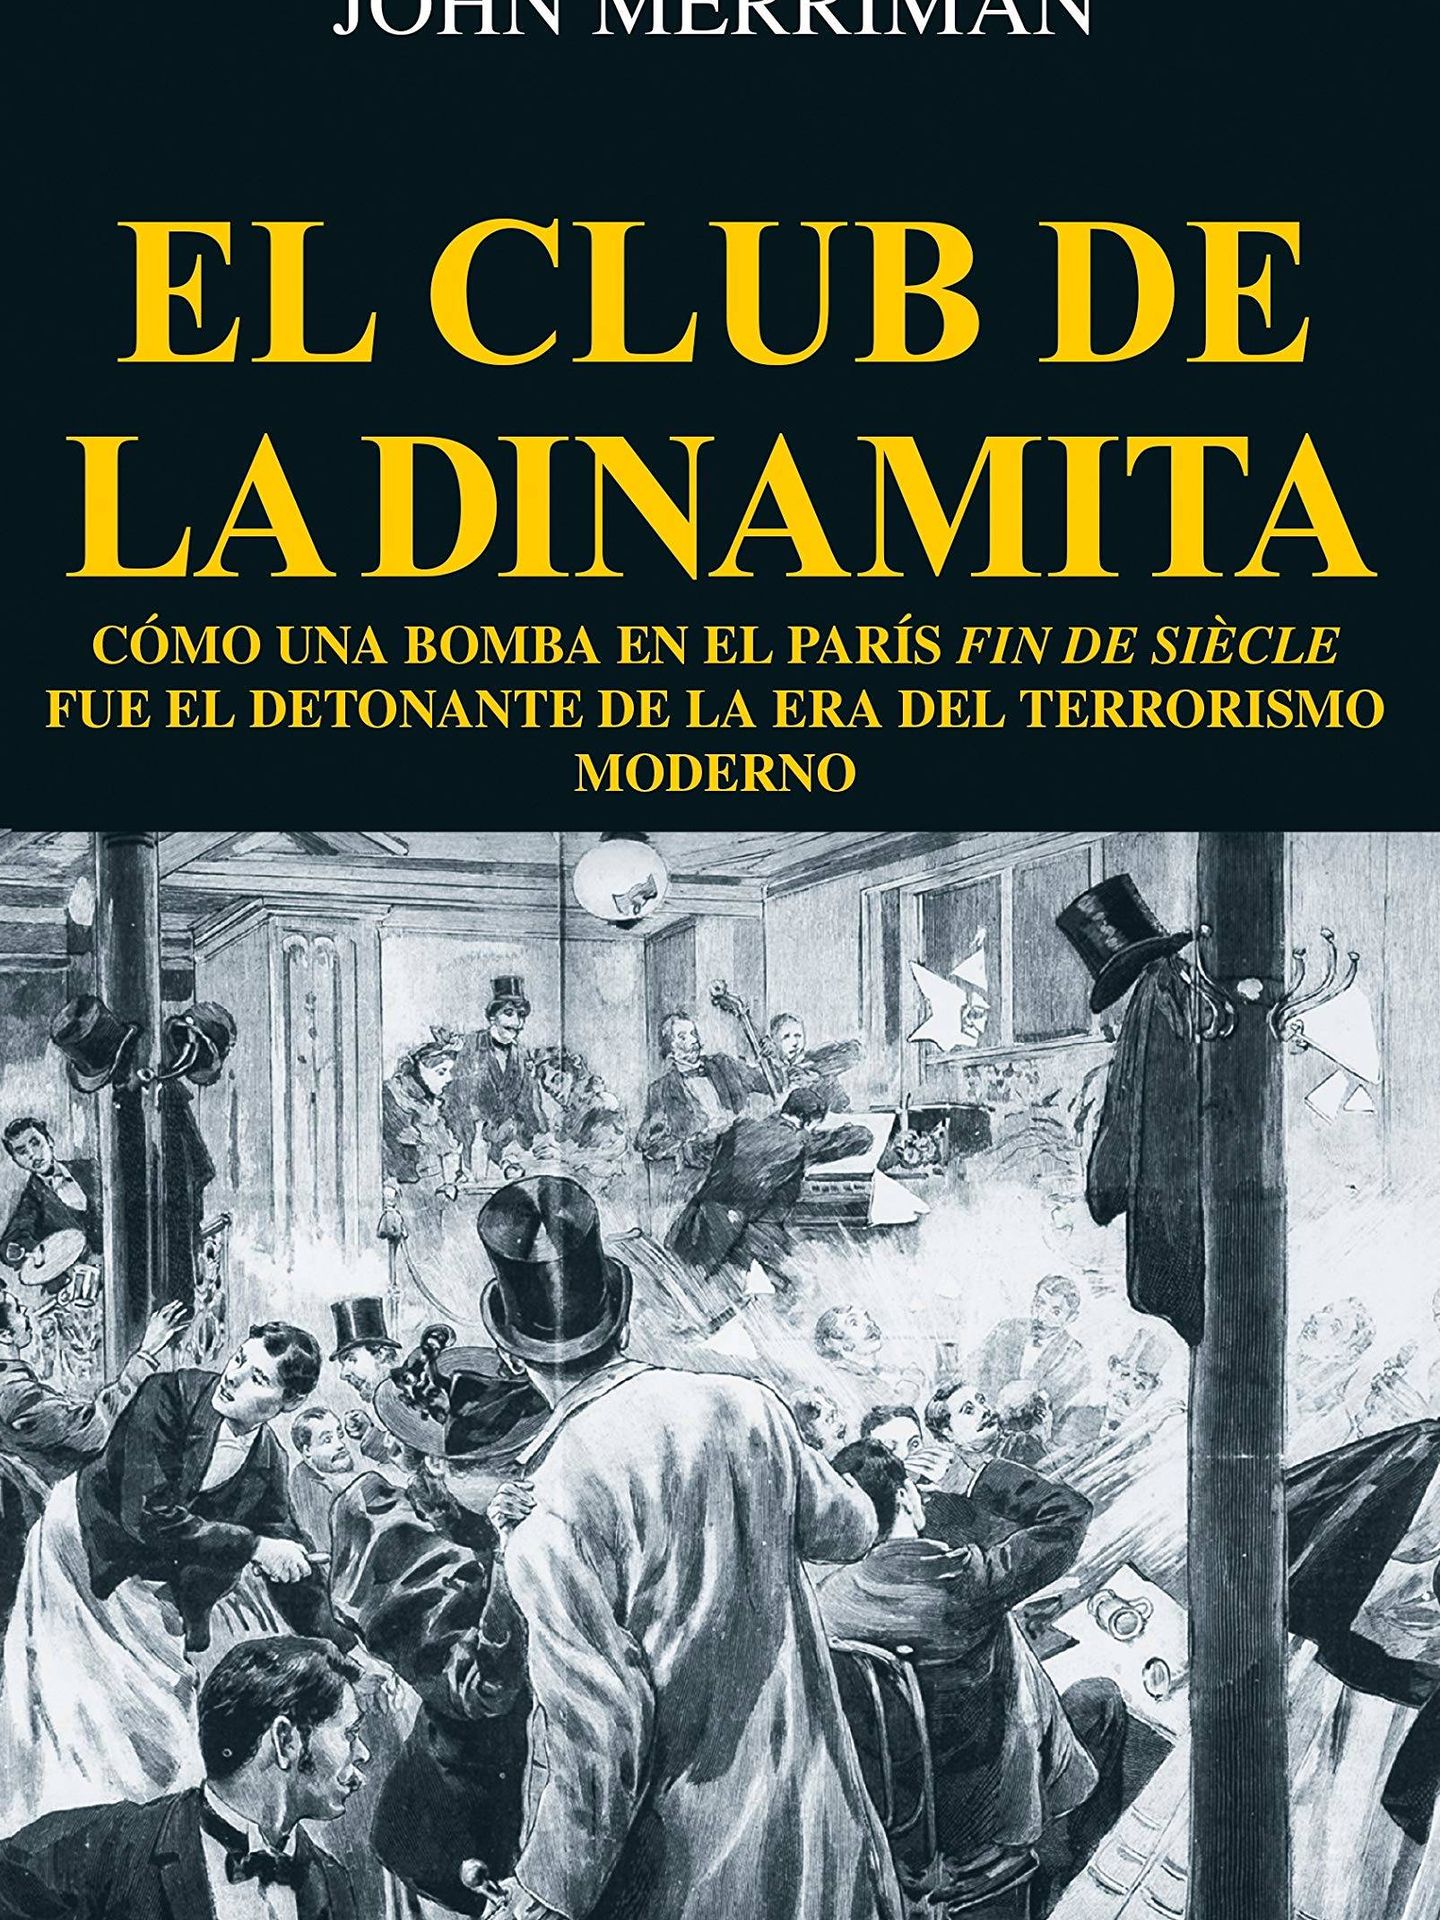 'El club de la dinamita'